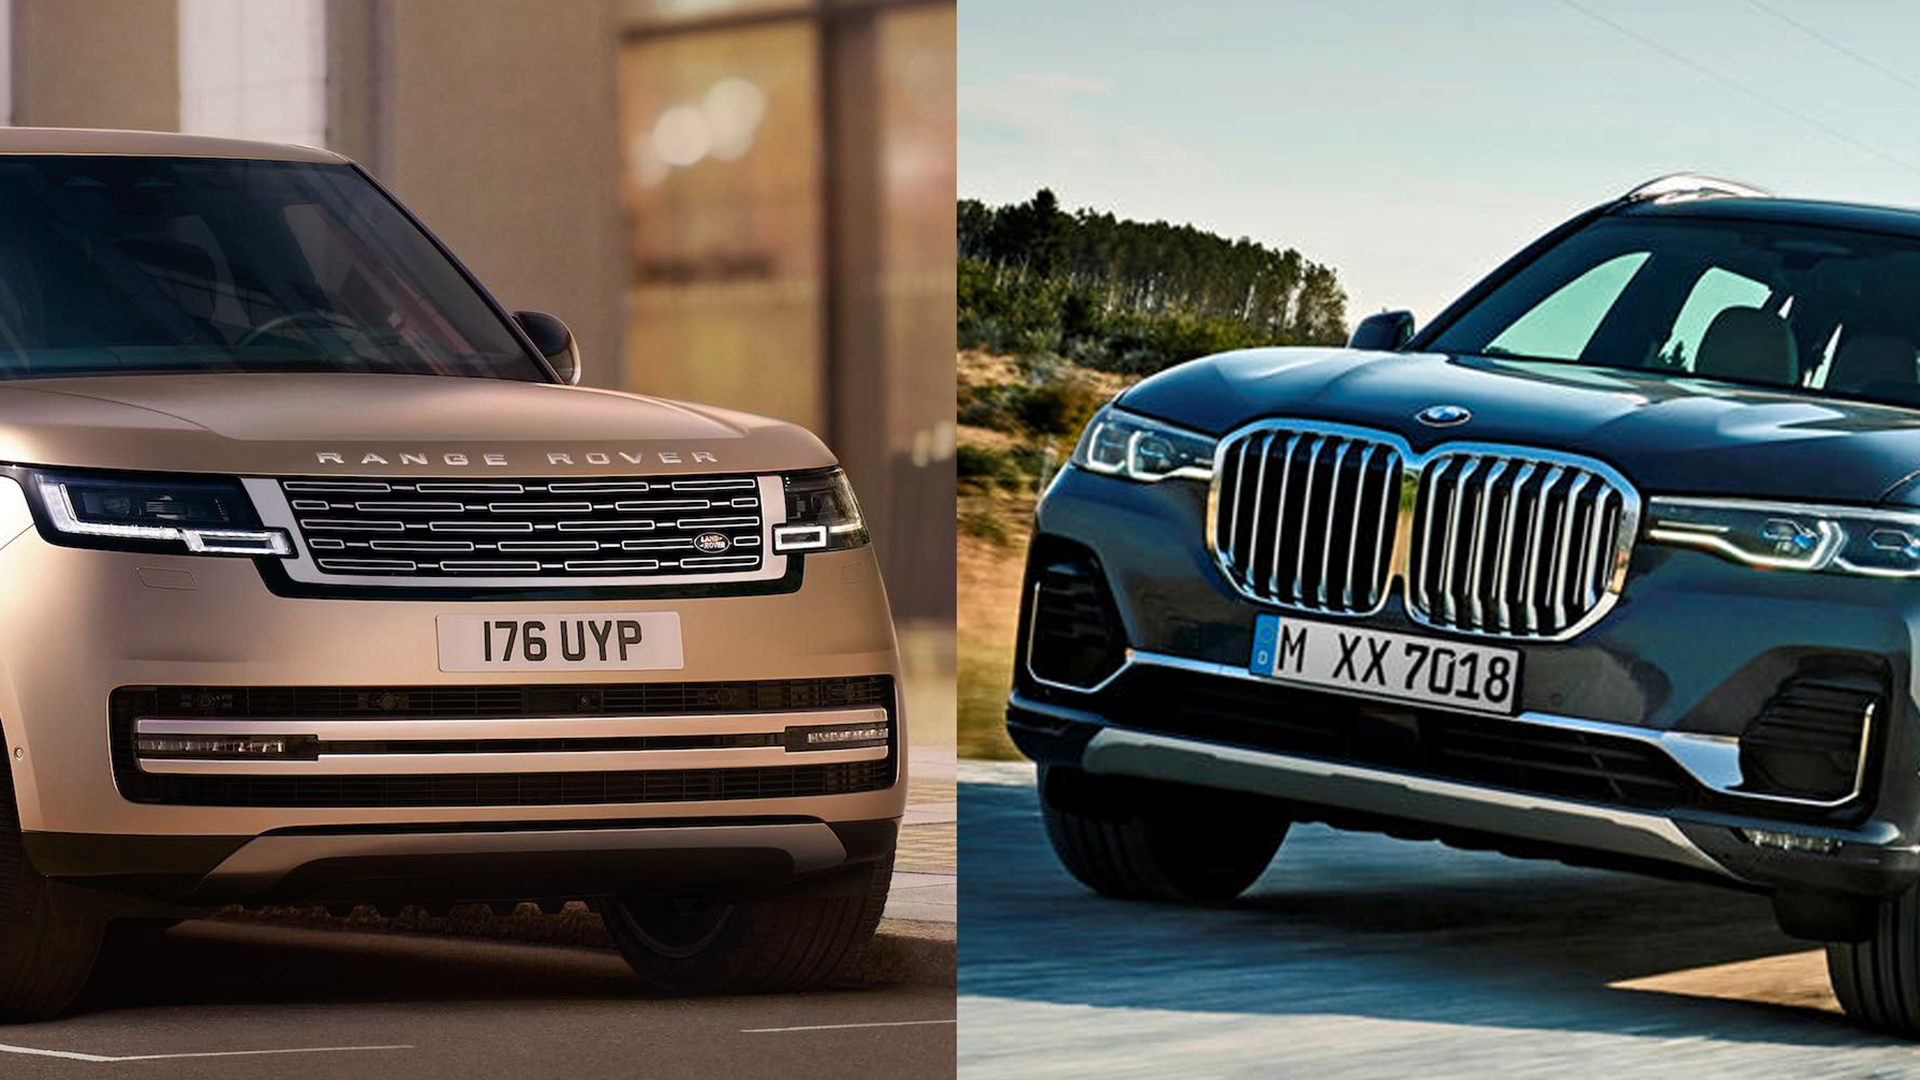 SUV hạng sang cỡ lớn: Chọn Range Rover 2022 hay BMW X7?